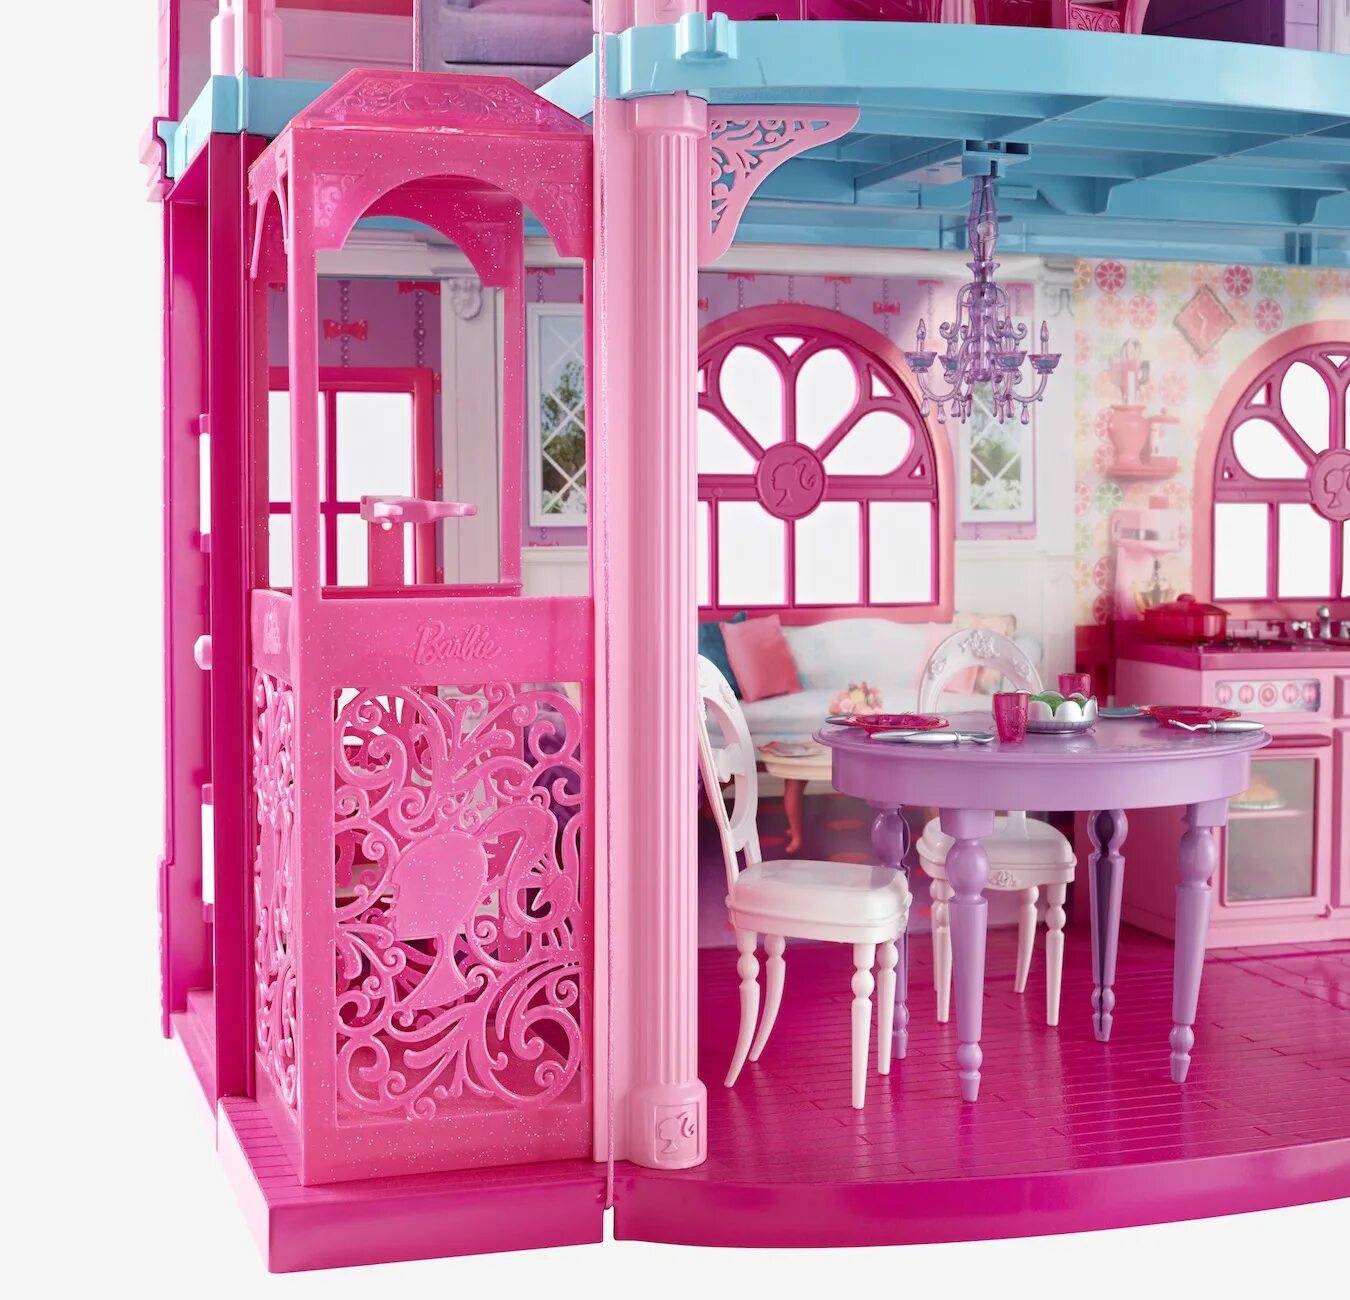 Барби Дрим Хаус. Дом Барби Дрим Хаус. Dreamhouse Barbie Малибу. Barbie’s Malibu Dreamhouse.